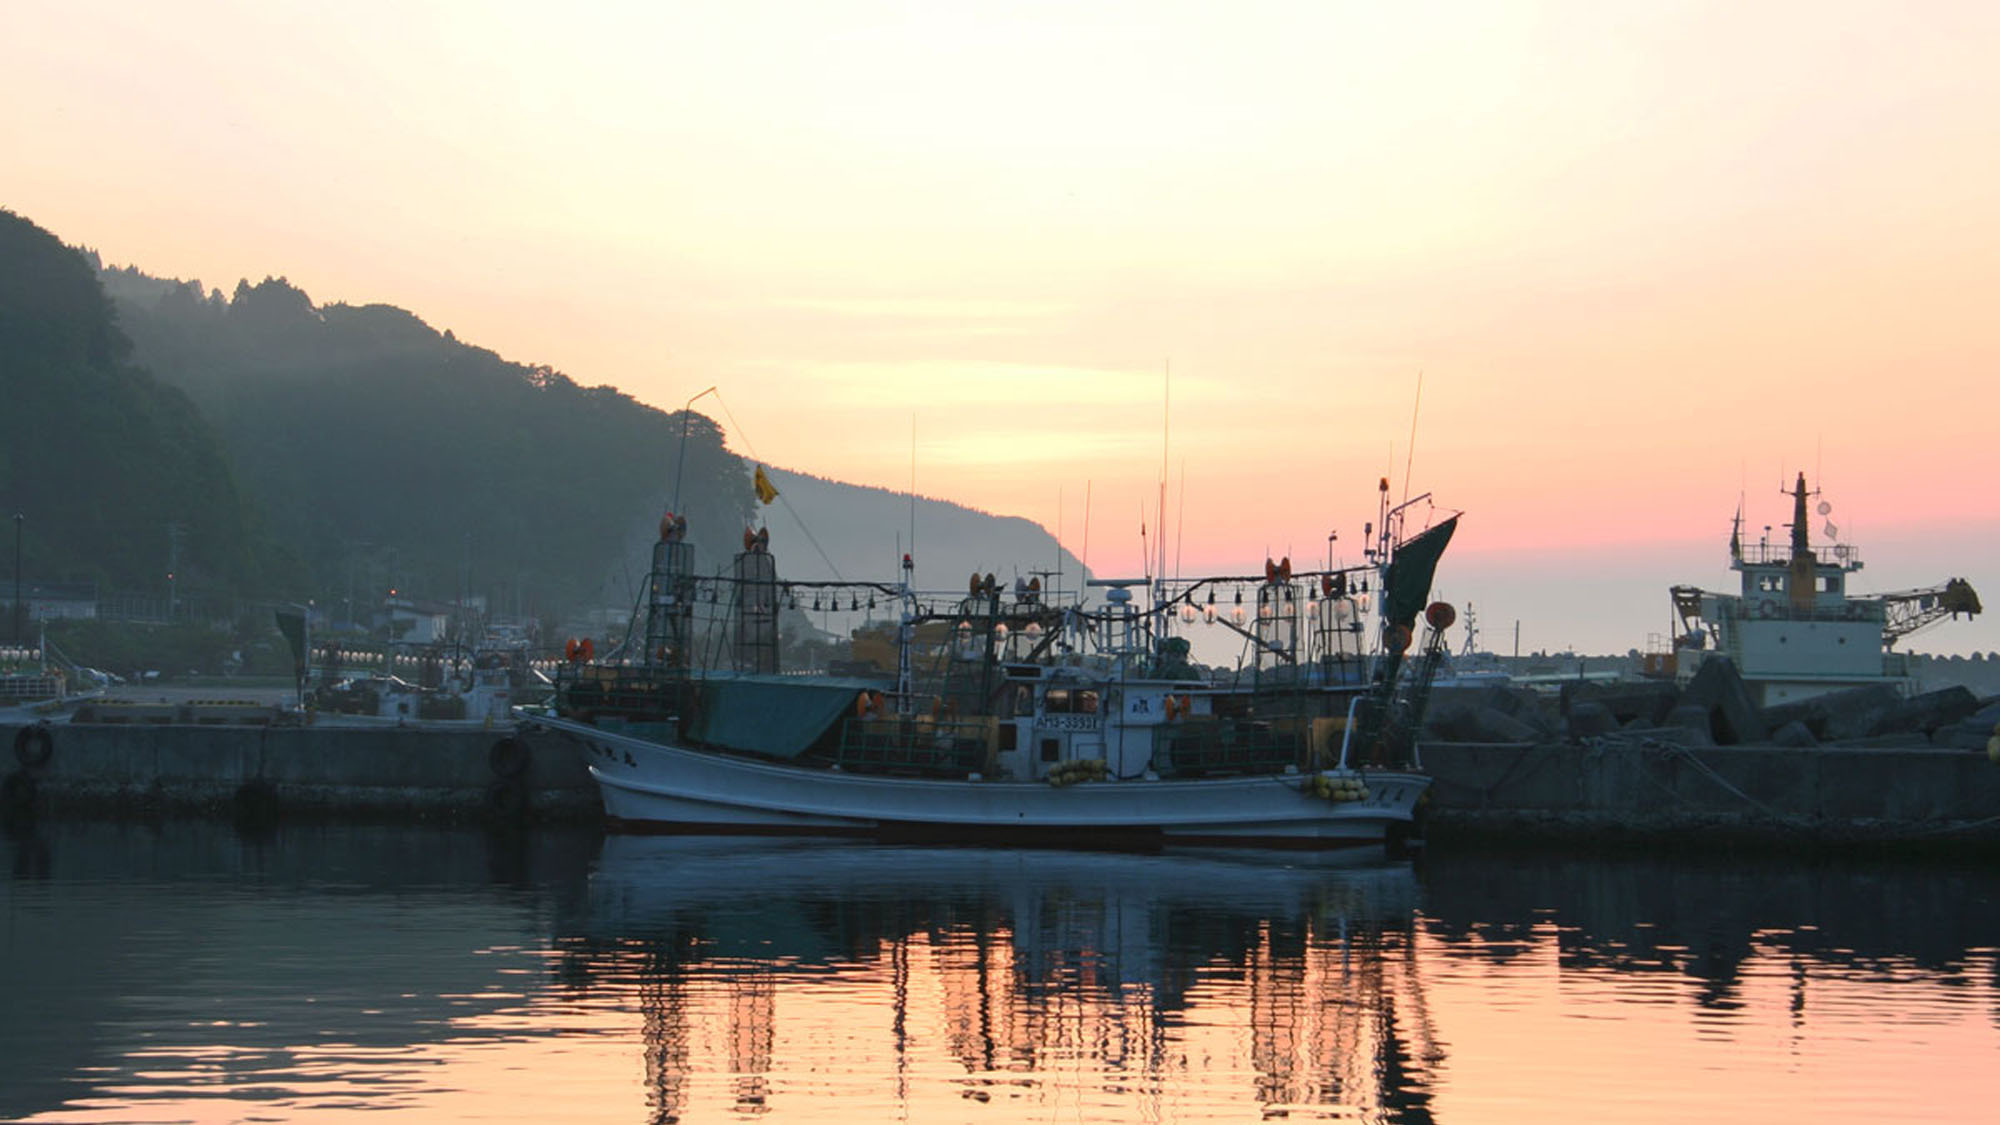 【下風呂港】夕日と漁火漁船。時期になると漁火を灯しながら漁をします。